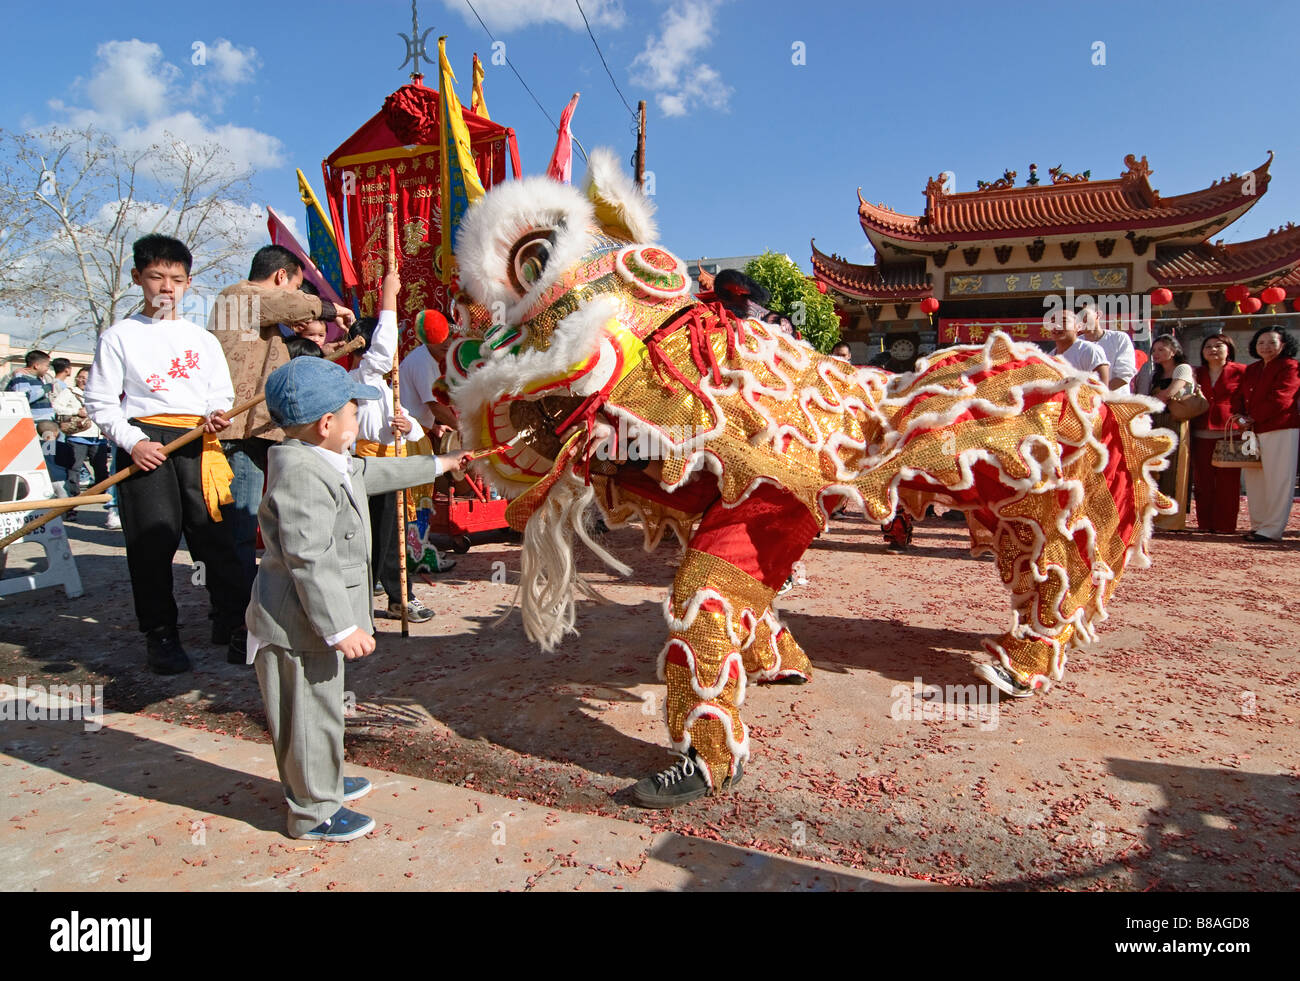 Garçon donnant une enveloppe rouge cadeau à un Lion danseur. Les danseurs du lion chinois au cours d'une célébration. Banque D'Images